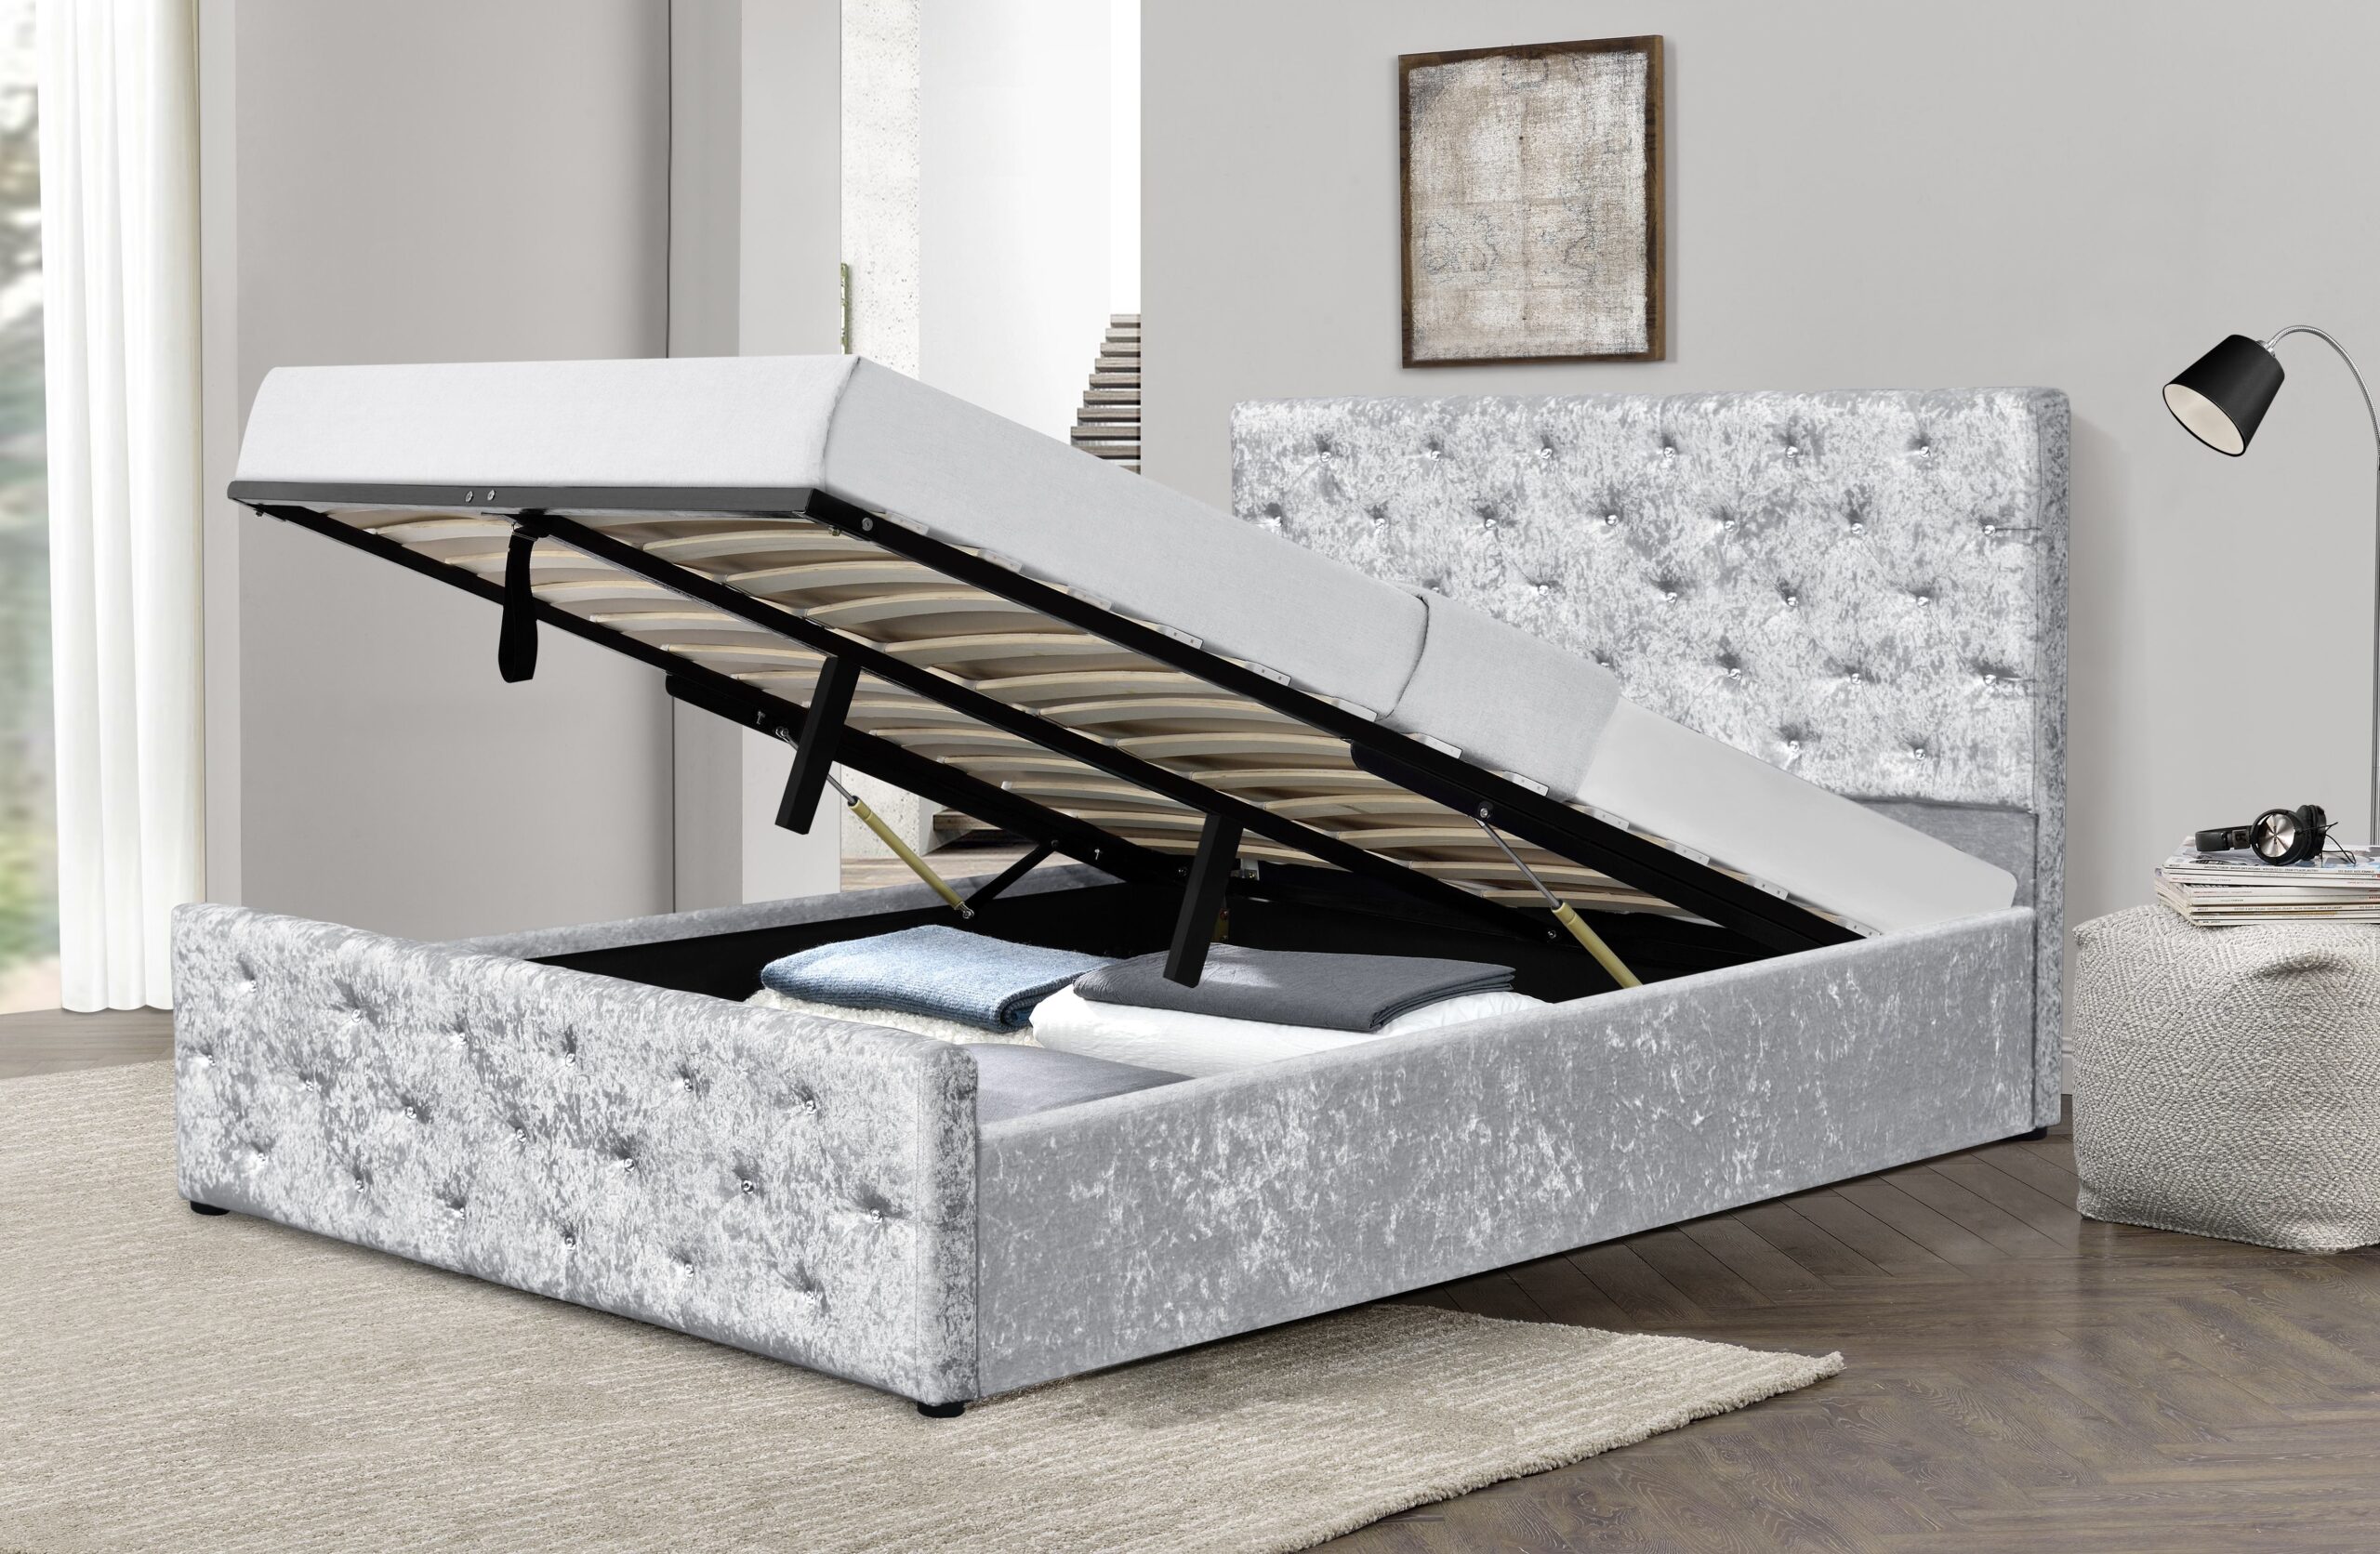 ottoman bed and mattress uk